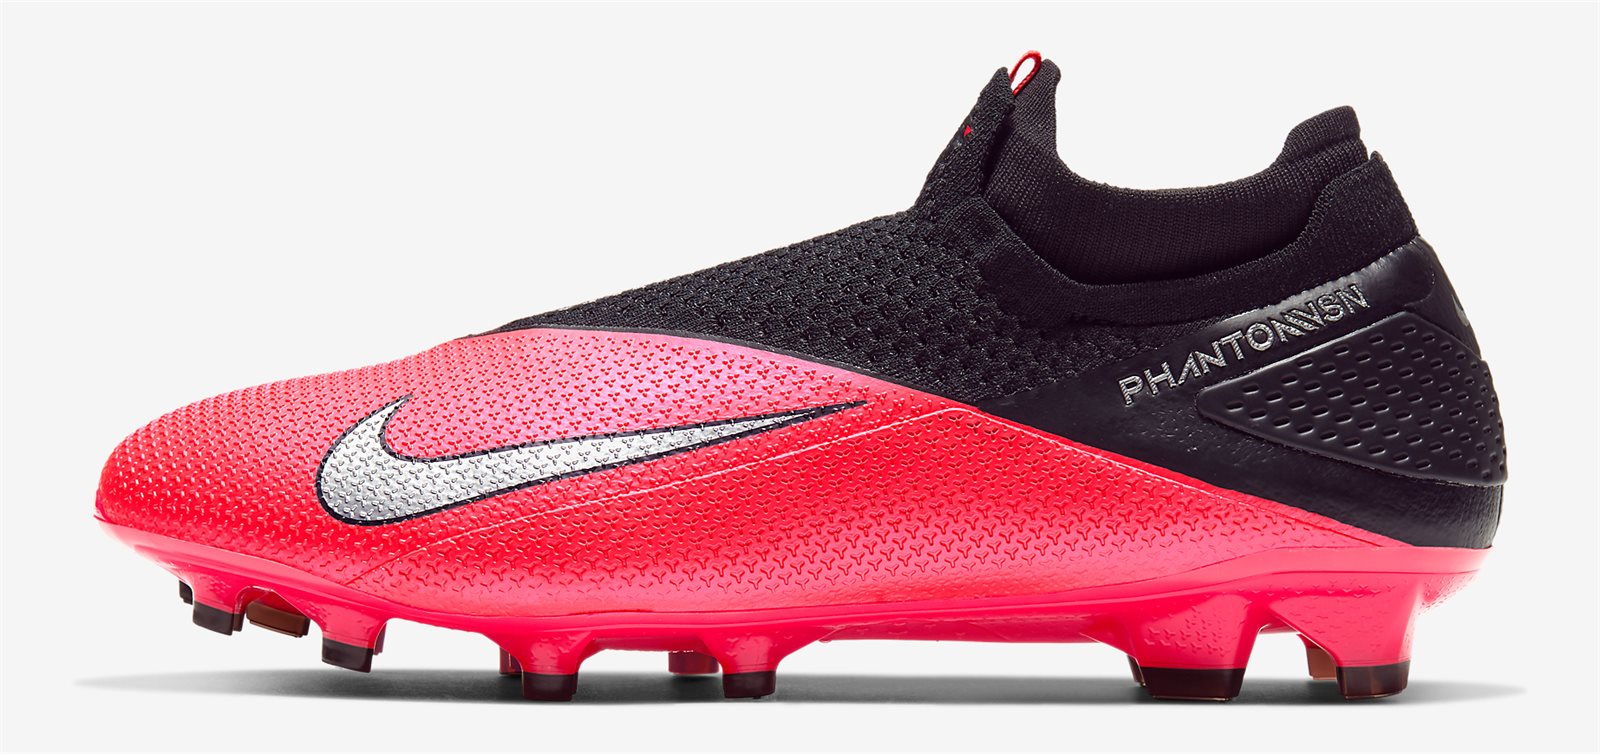 Tiền vệ ngôi sao Kevin De Bruyne sử dụng dòng giày kiểm soát bóng của Nike là Phantom VSN 2